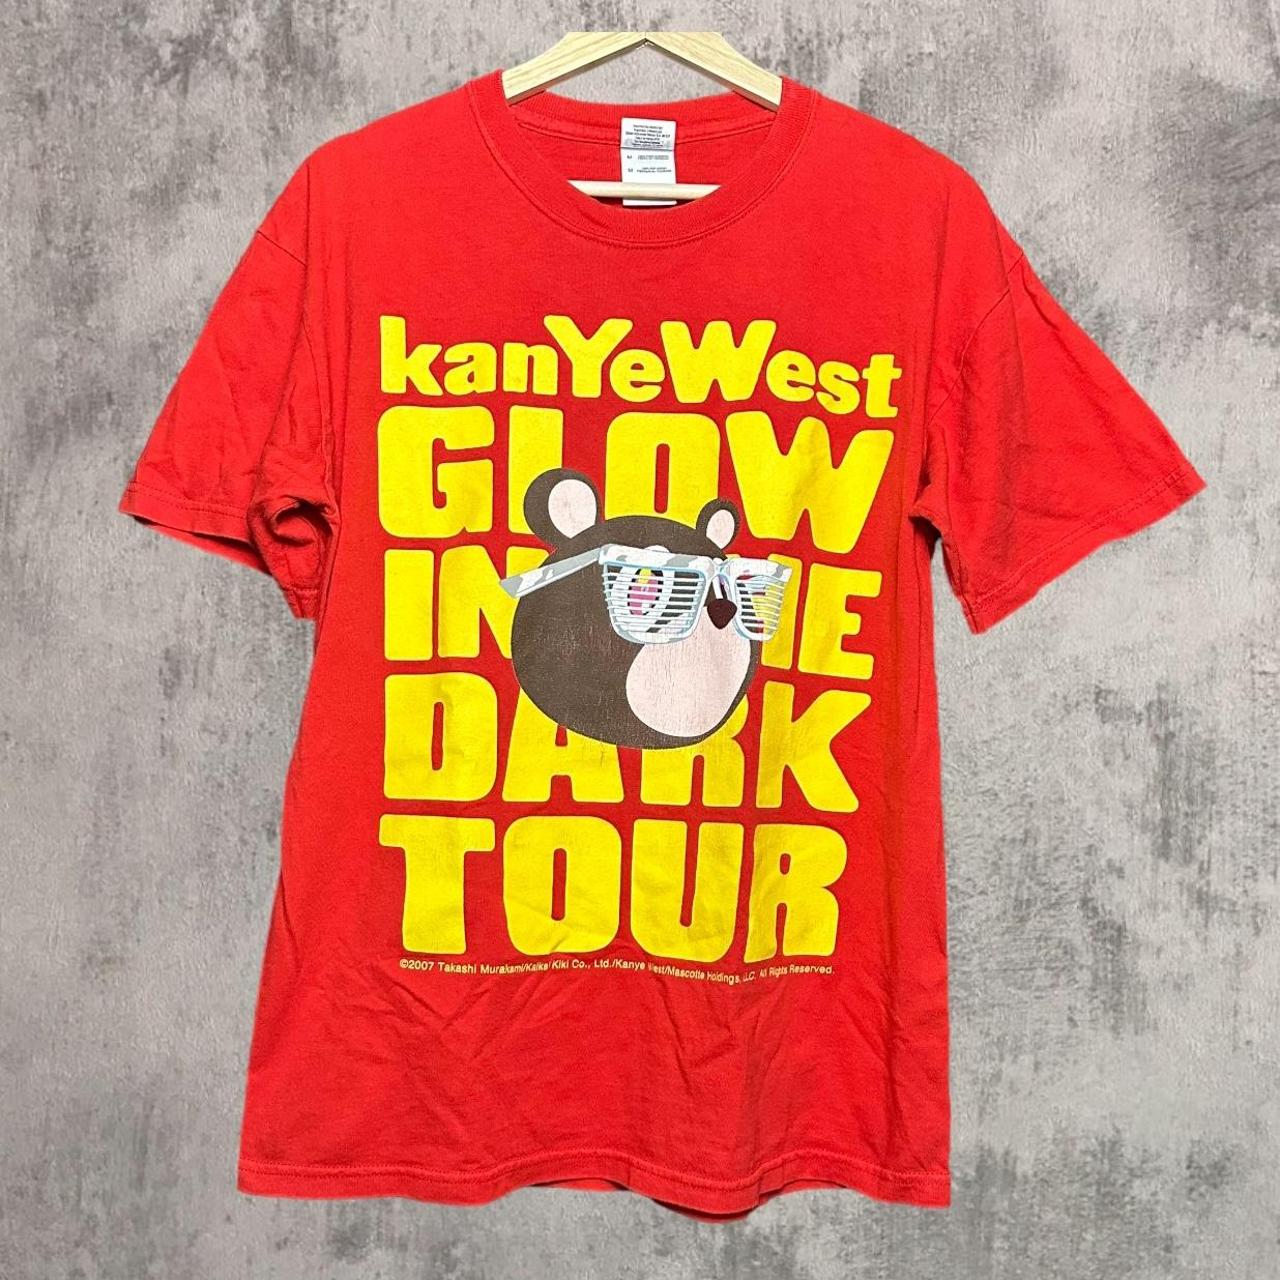 Kanye West Takashi Murakami Glow in the Dark Tour Vintage 